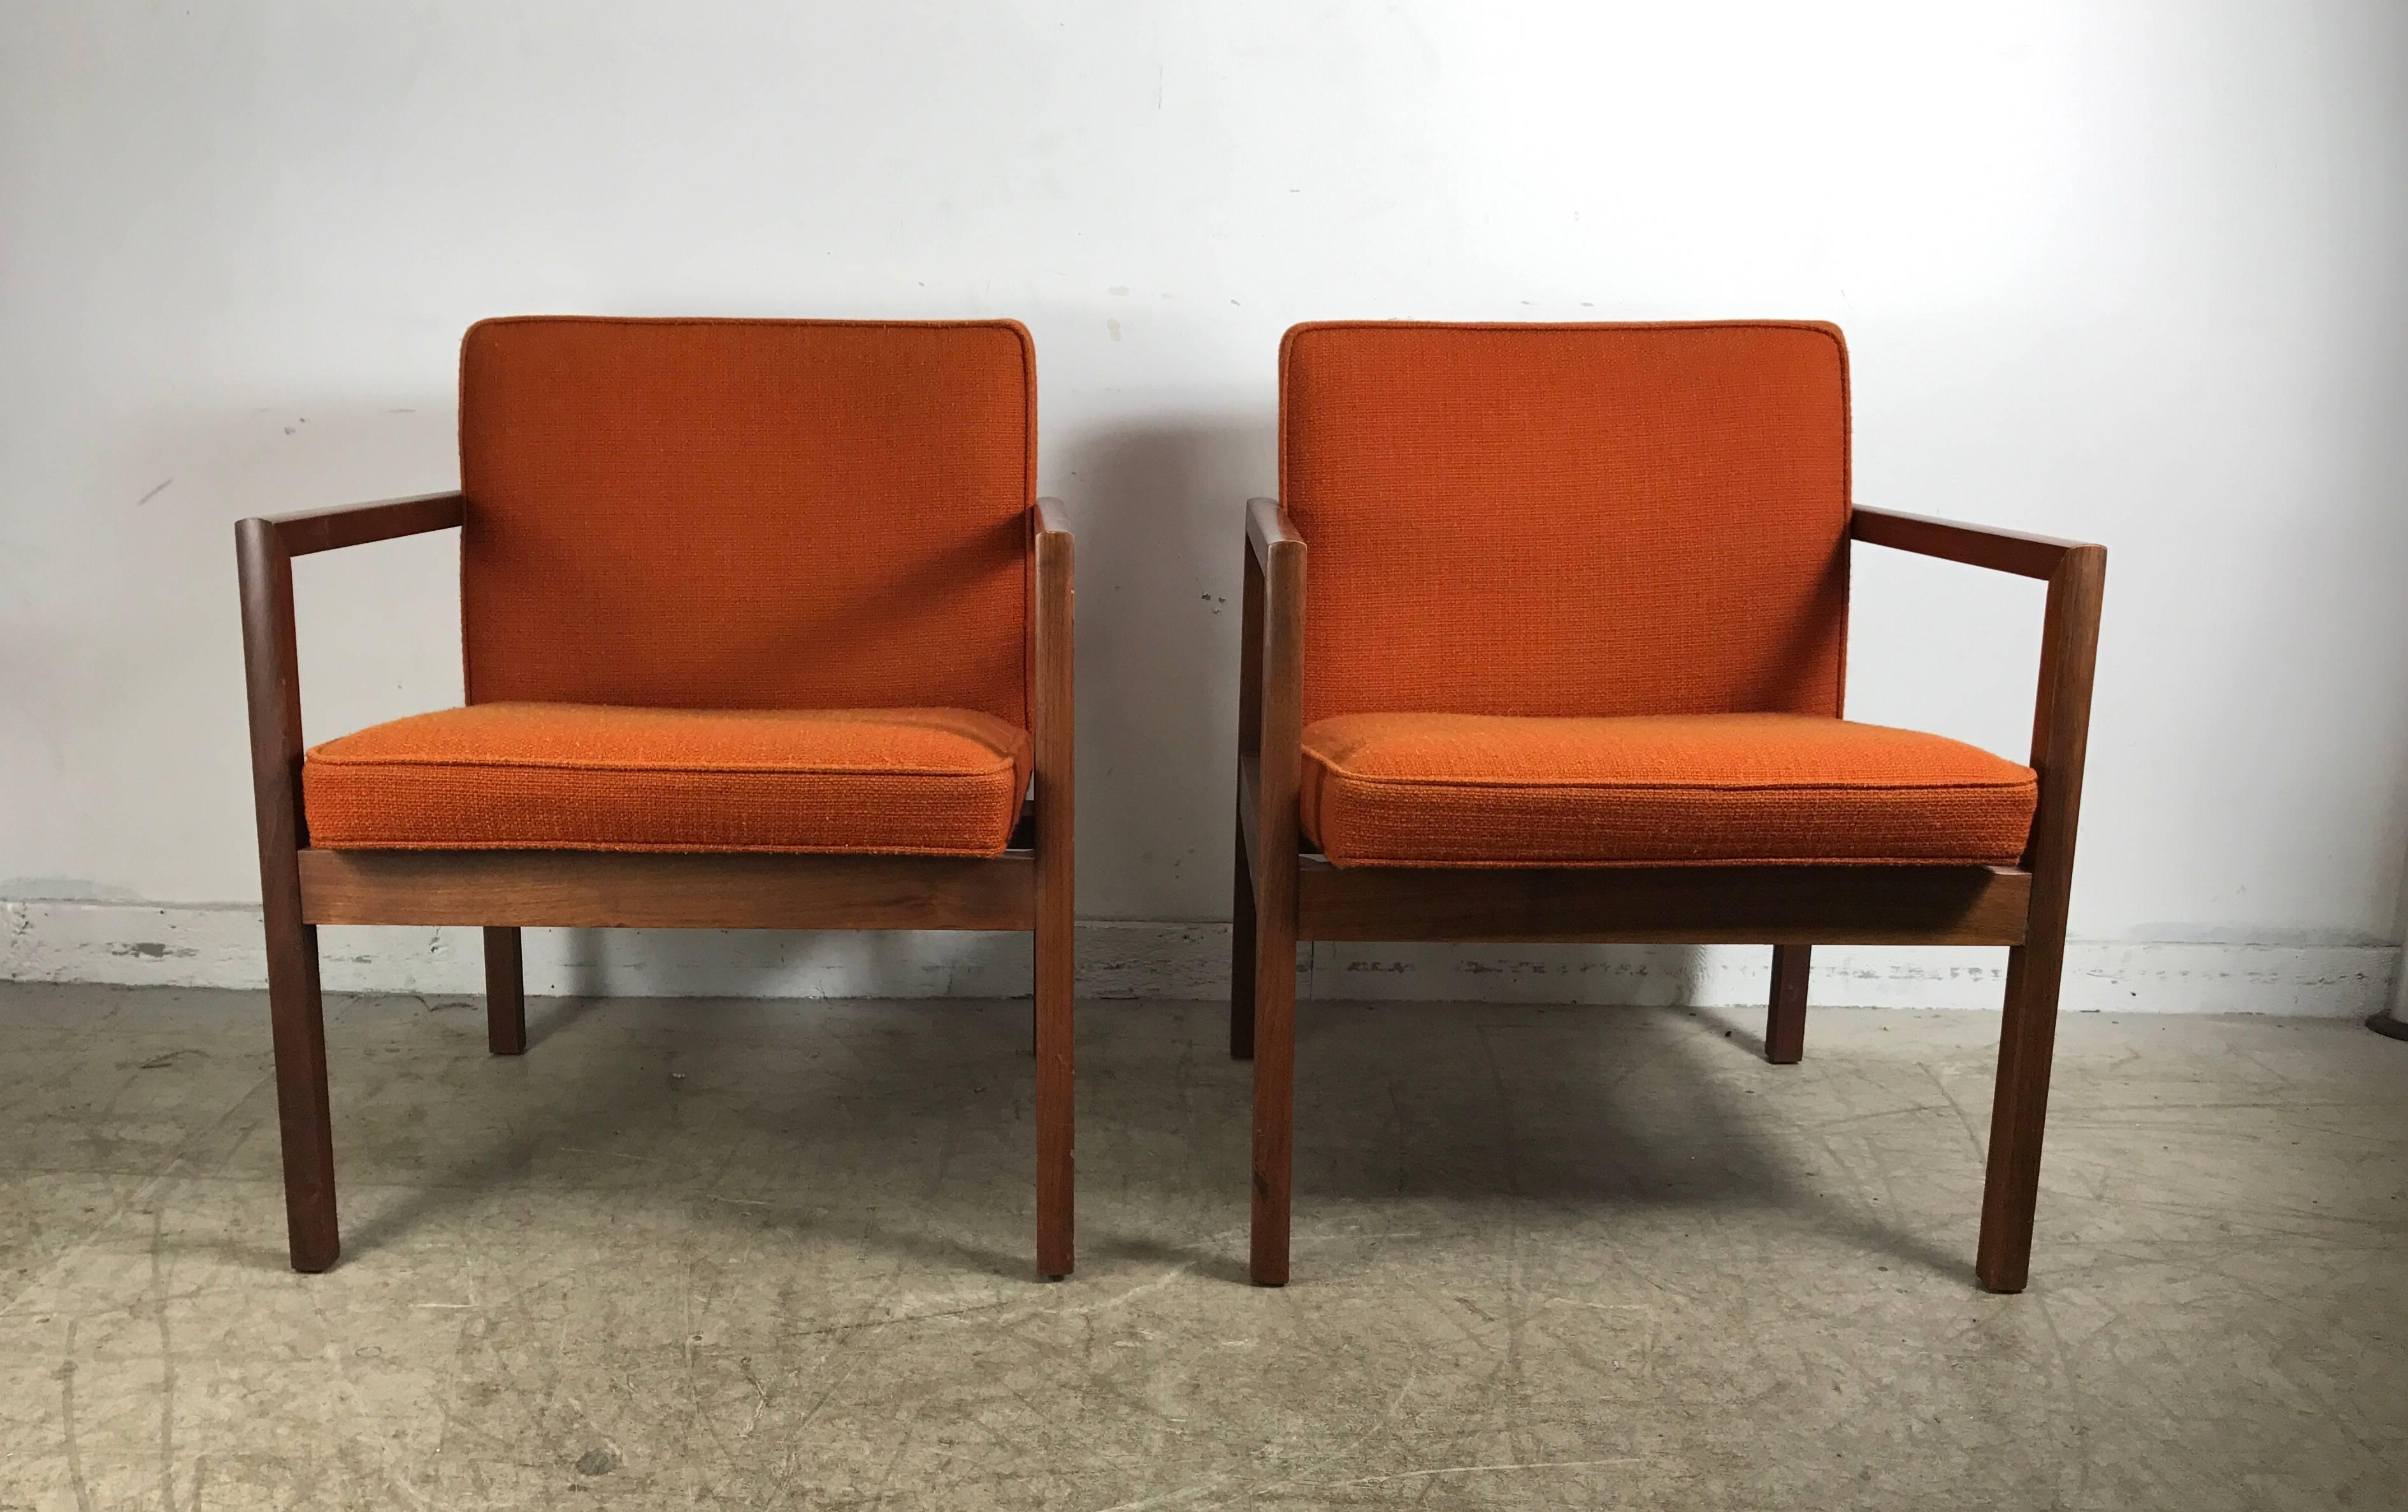 Coppia di sedie da salotto in noce massiccio della metà del secolo scorso di Jen Davis, con un bel profilo architettonico nello stile di Jens Risom. Qualità e costruzione superiori, conserva il tessuto originale in lana arancione, estremamente